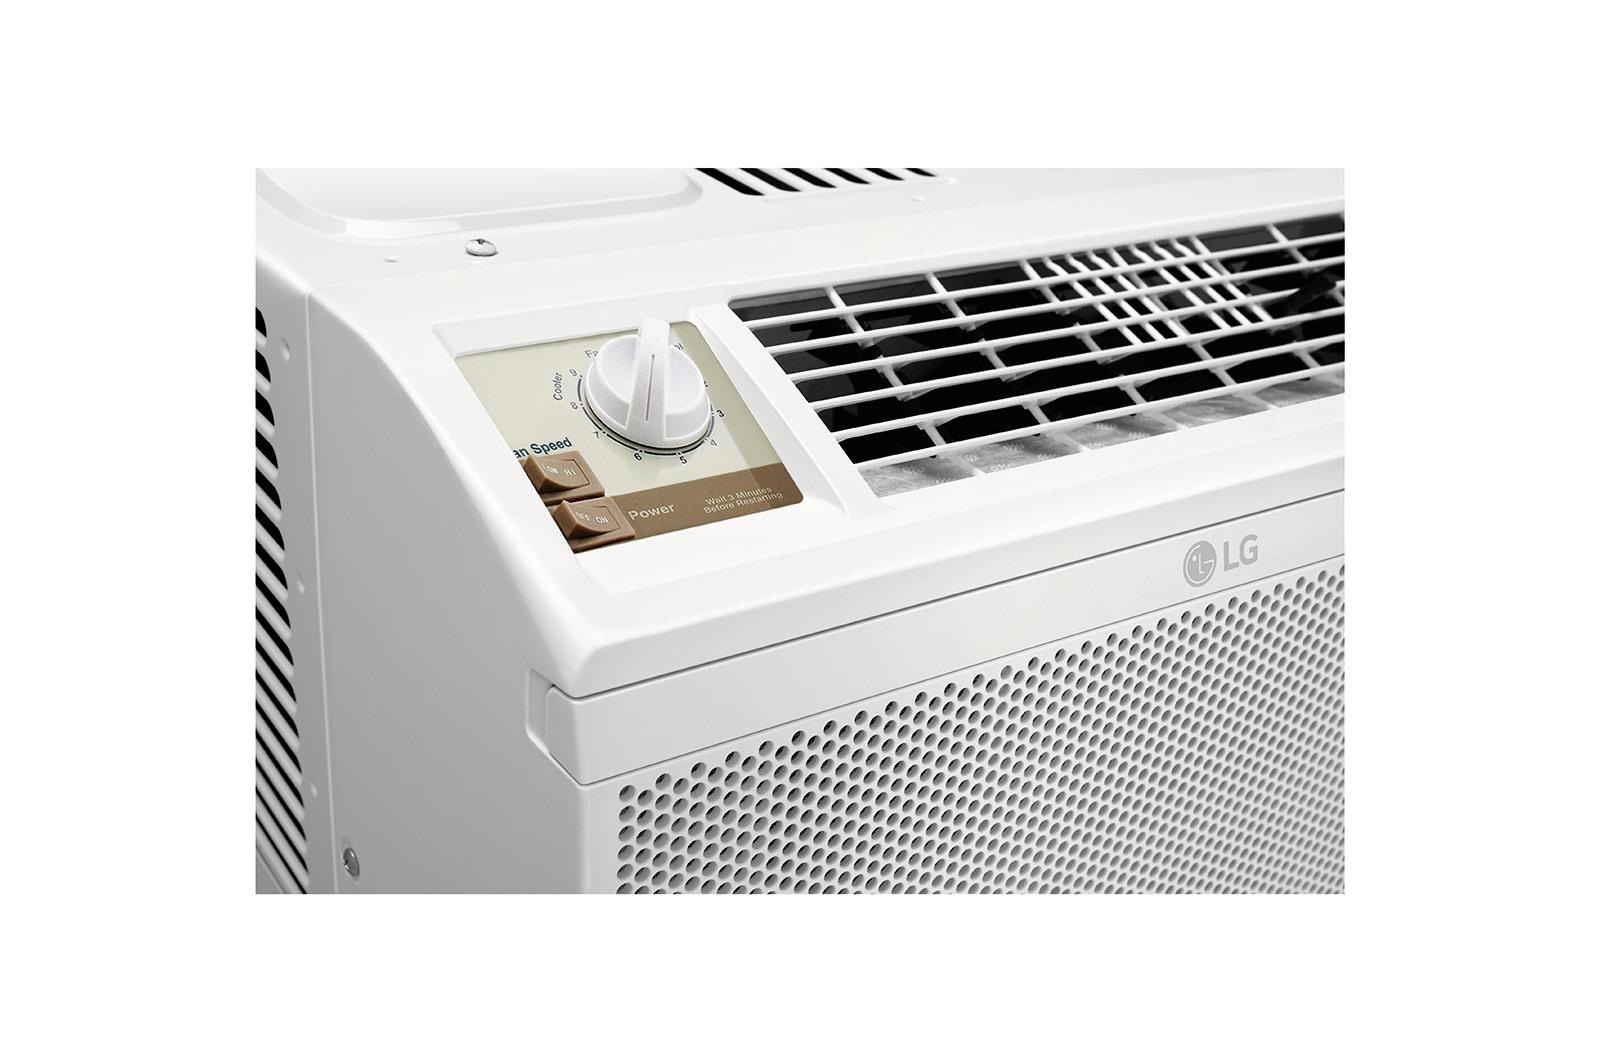 Lg LW5022 5,000 Btu Window Air Conditioner